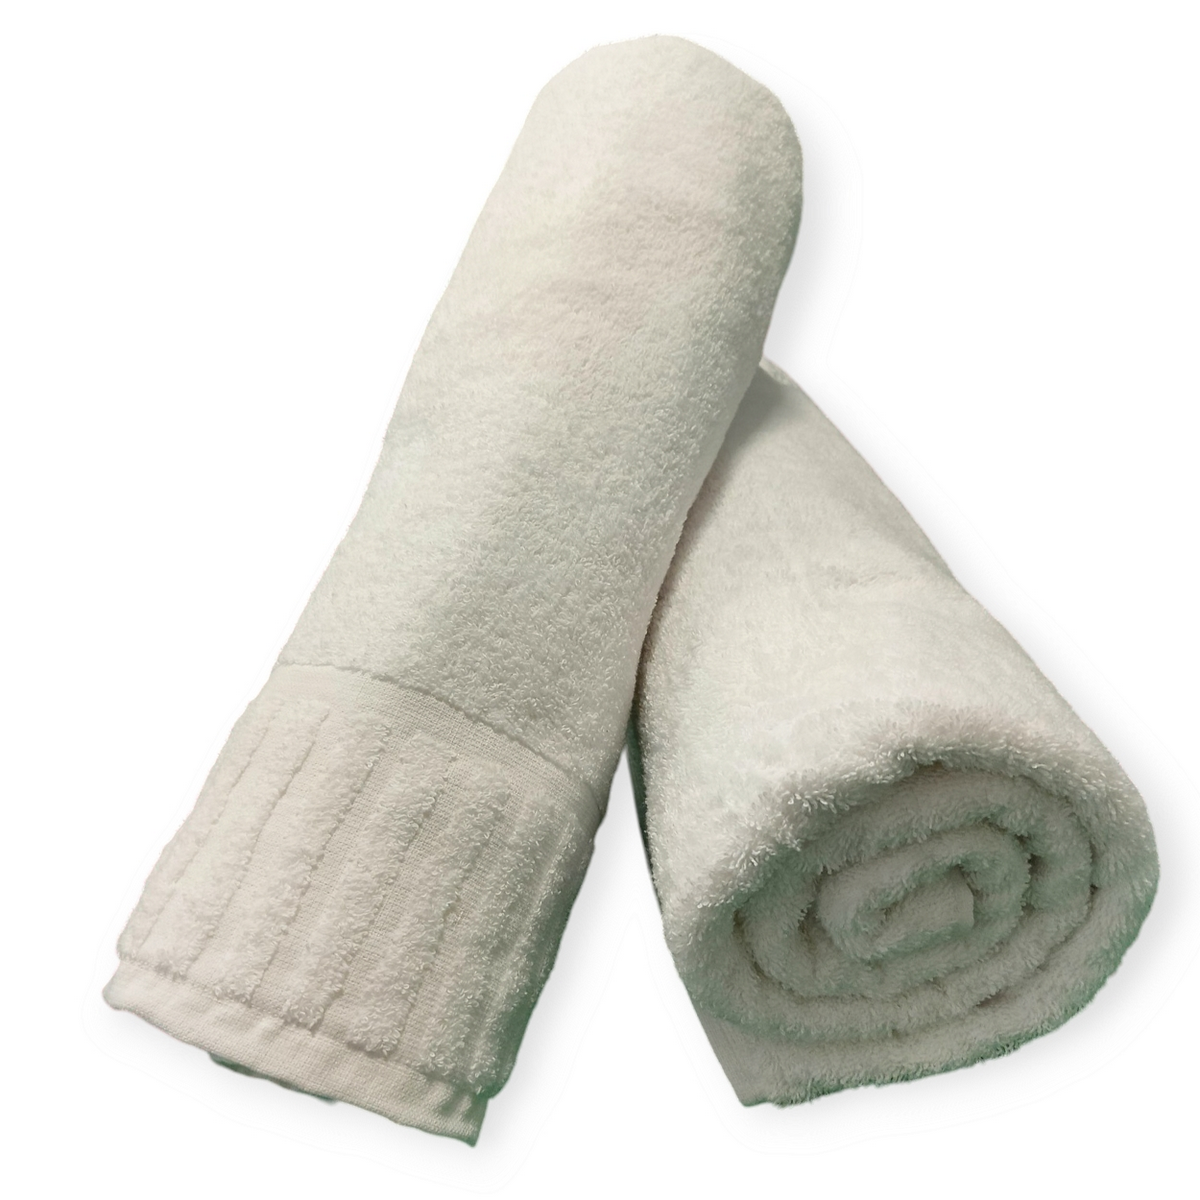 Asciugamani Premium per B&B e Case Vacanza - Morbidezza e Resistenza Superiori